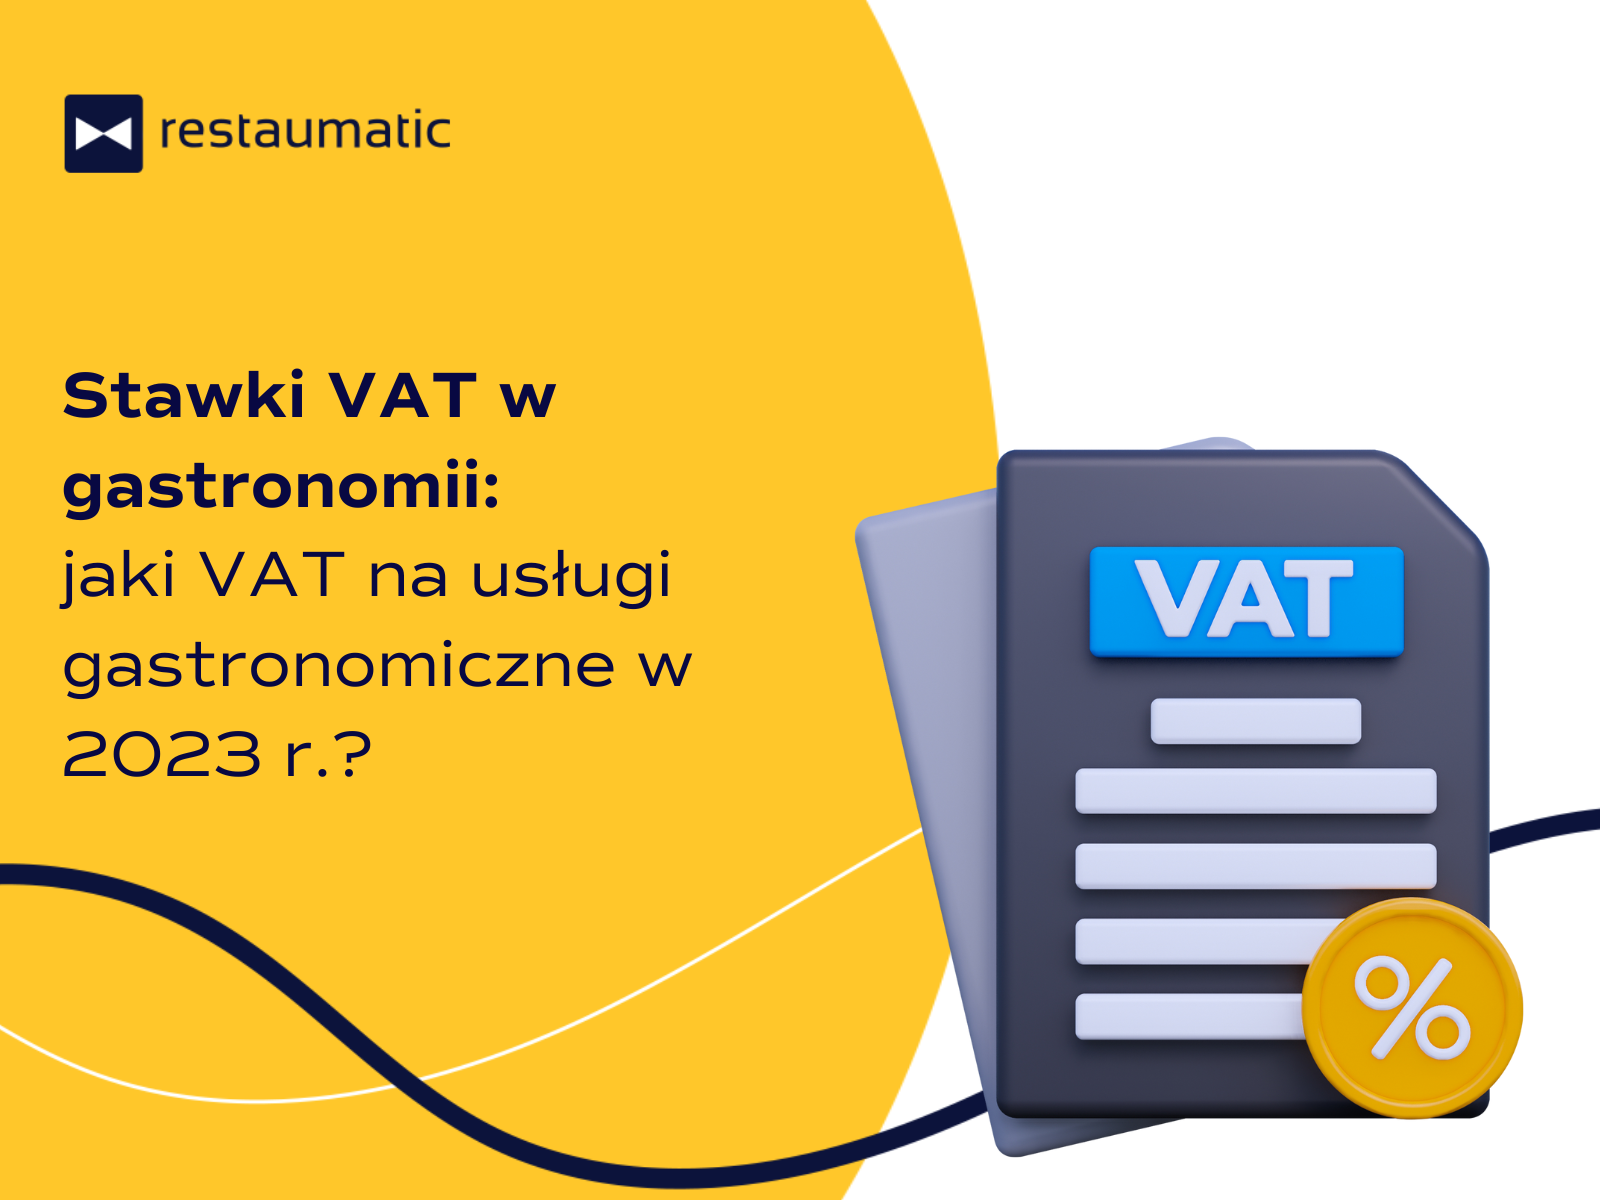 Stawki VAT w gastronomii: jaki VAT na usługi gastronomiczne w 2023 r.?